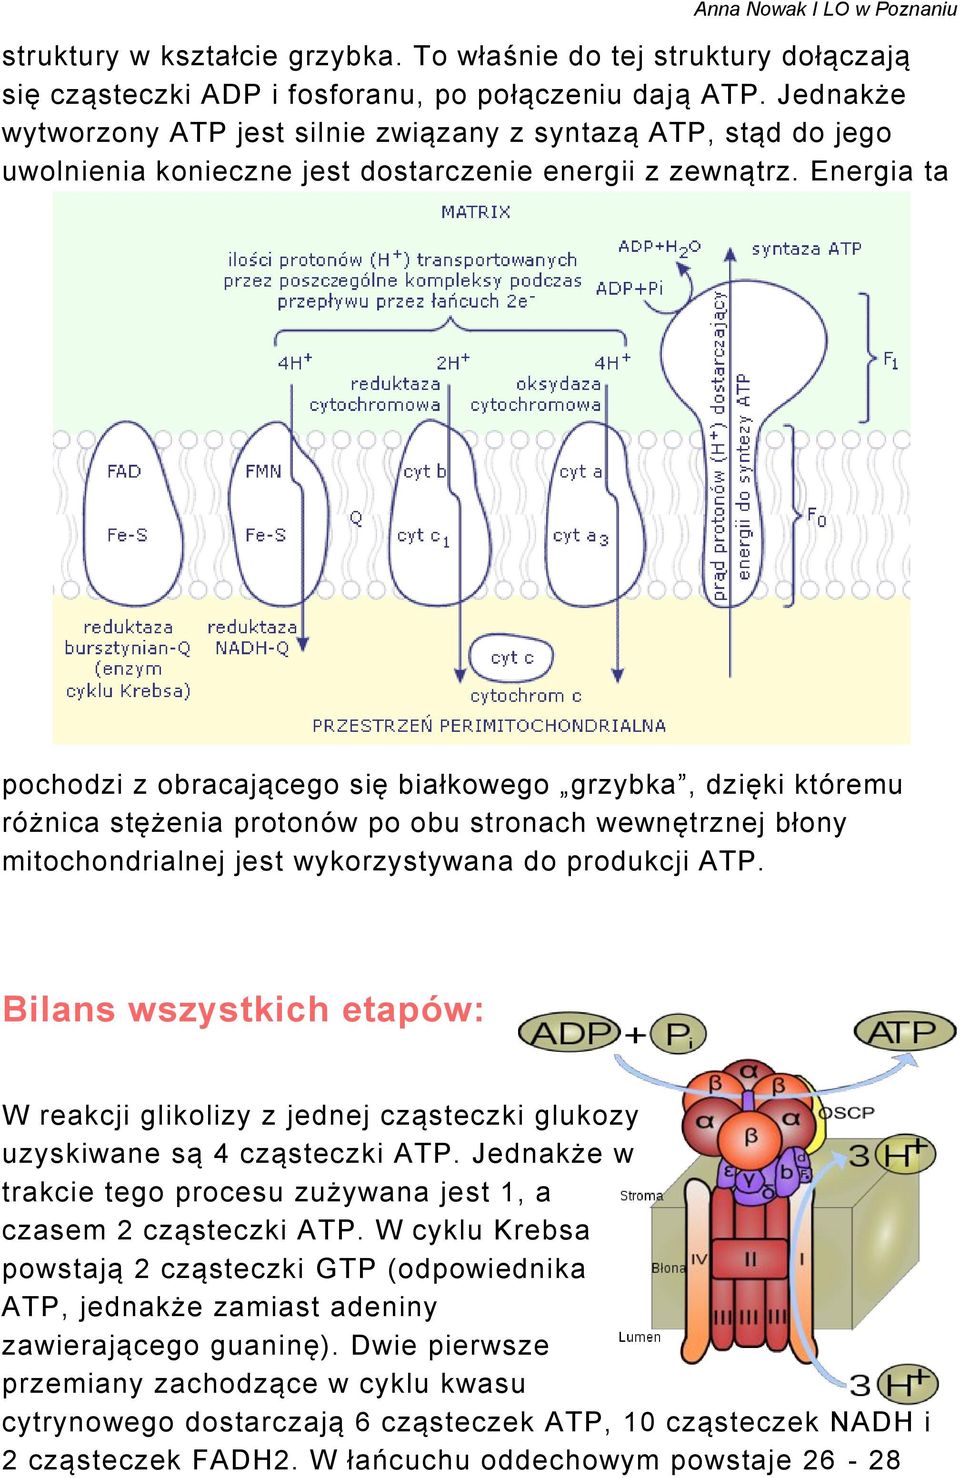 Energia ta pochodzi z obracającego się białkowego grzybka, dzięki któremu różnica stężenia protonów po obu stronach wewnętrznej błony mitochondrialnej jest wykorzystywana do produkcji ATP.